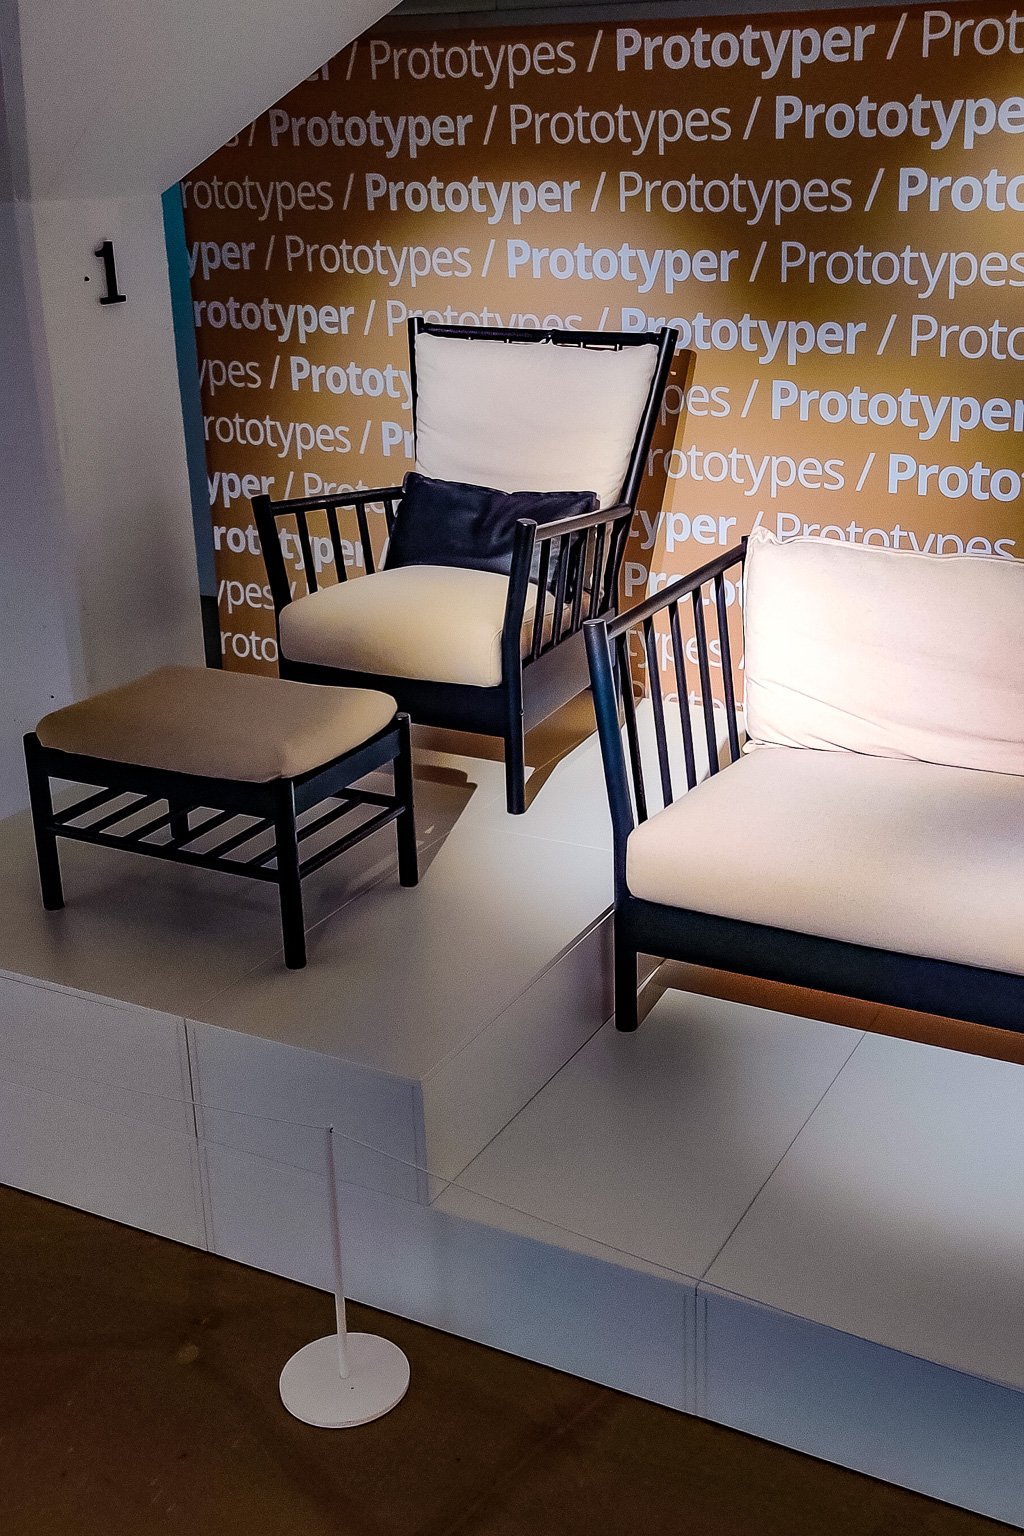 Prototypmöbler på Ikea museum